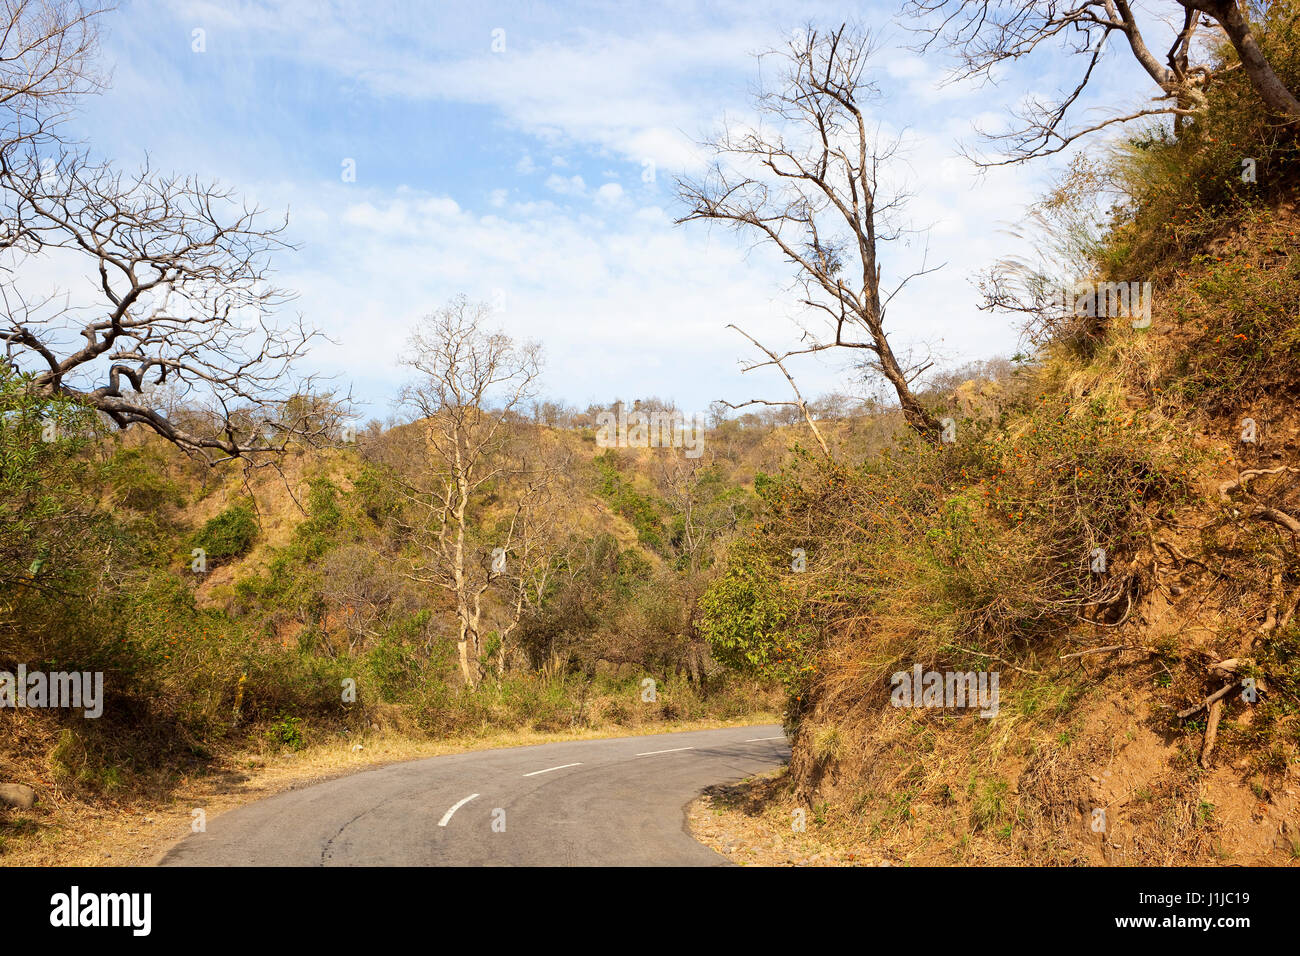 Road y el paisaje de las colinas de morni reserva natural cerca de Chandigarh, en India del norte con colinas de arena y vegetación bajo un cielo nublado azul Foto de stock